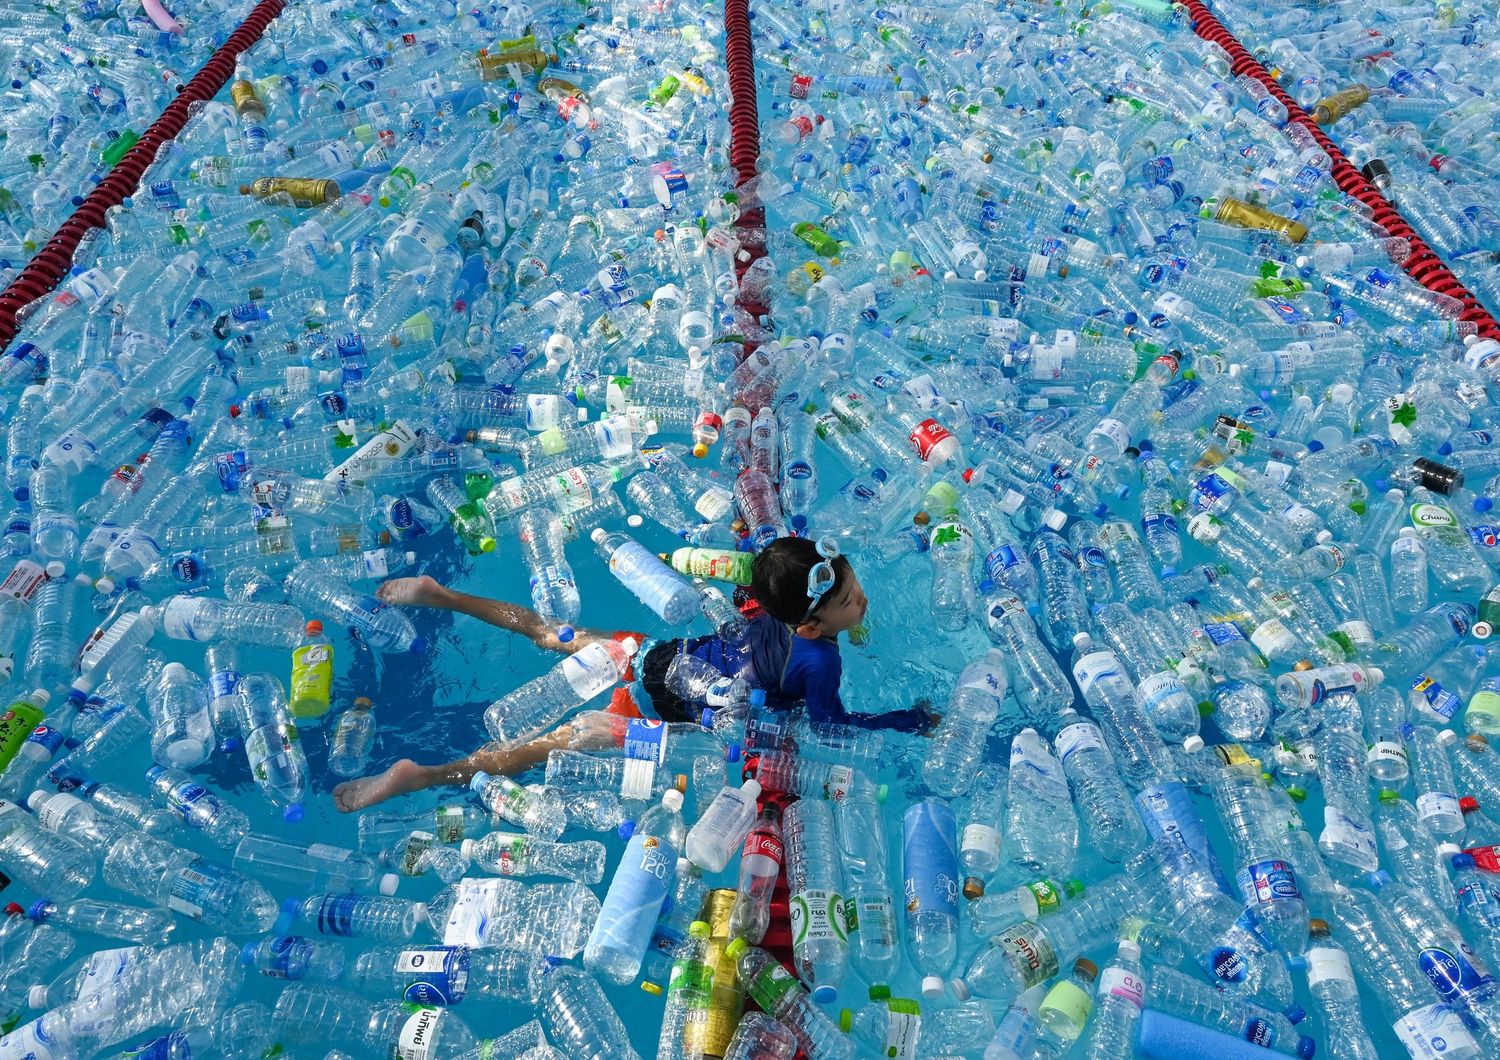 Un bambino nuota in una piscina piena di plastica: parte di una campagna contro l'Inquinamento a Bangkok